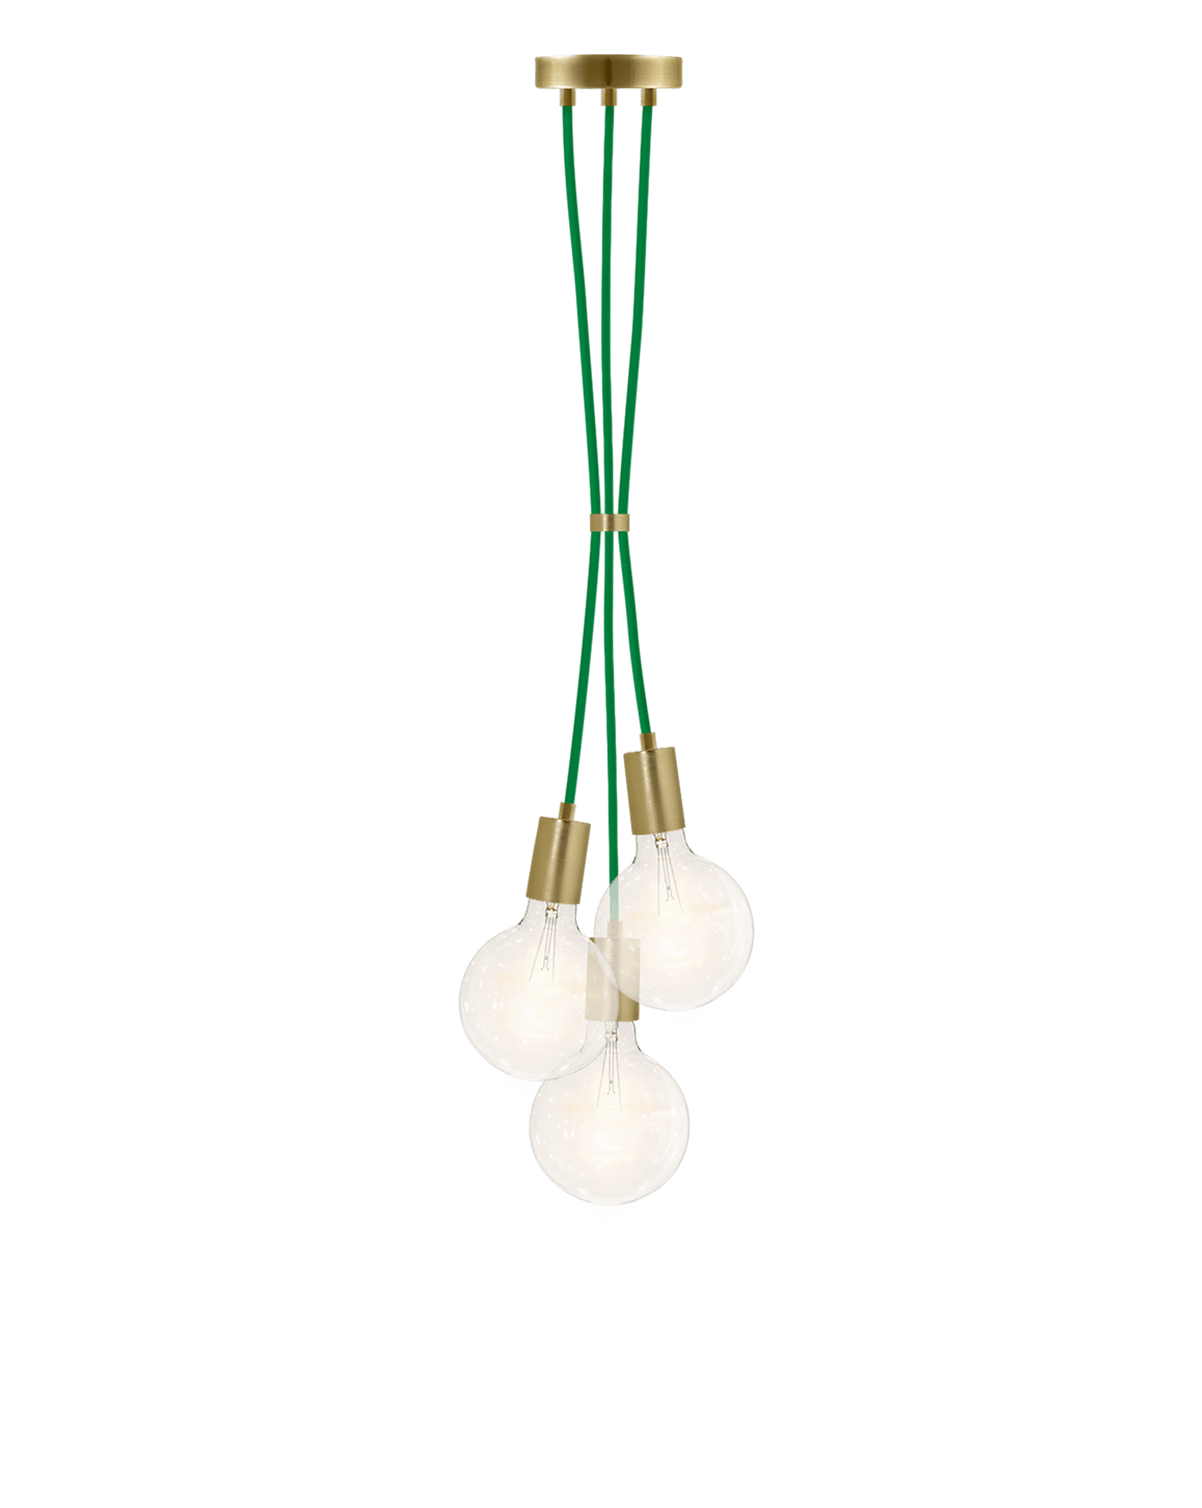 Cluster Chandelier - Grape: Green and Brass Hangout Lighting 3 Grape